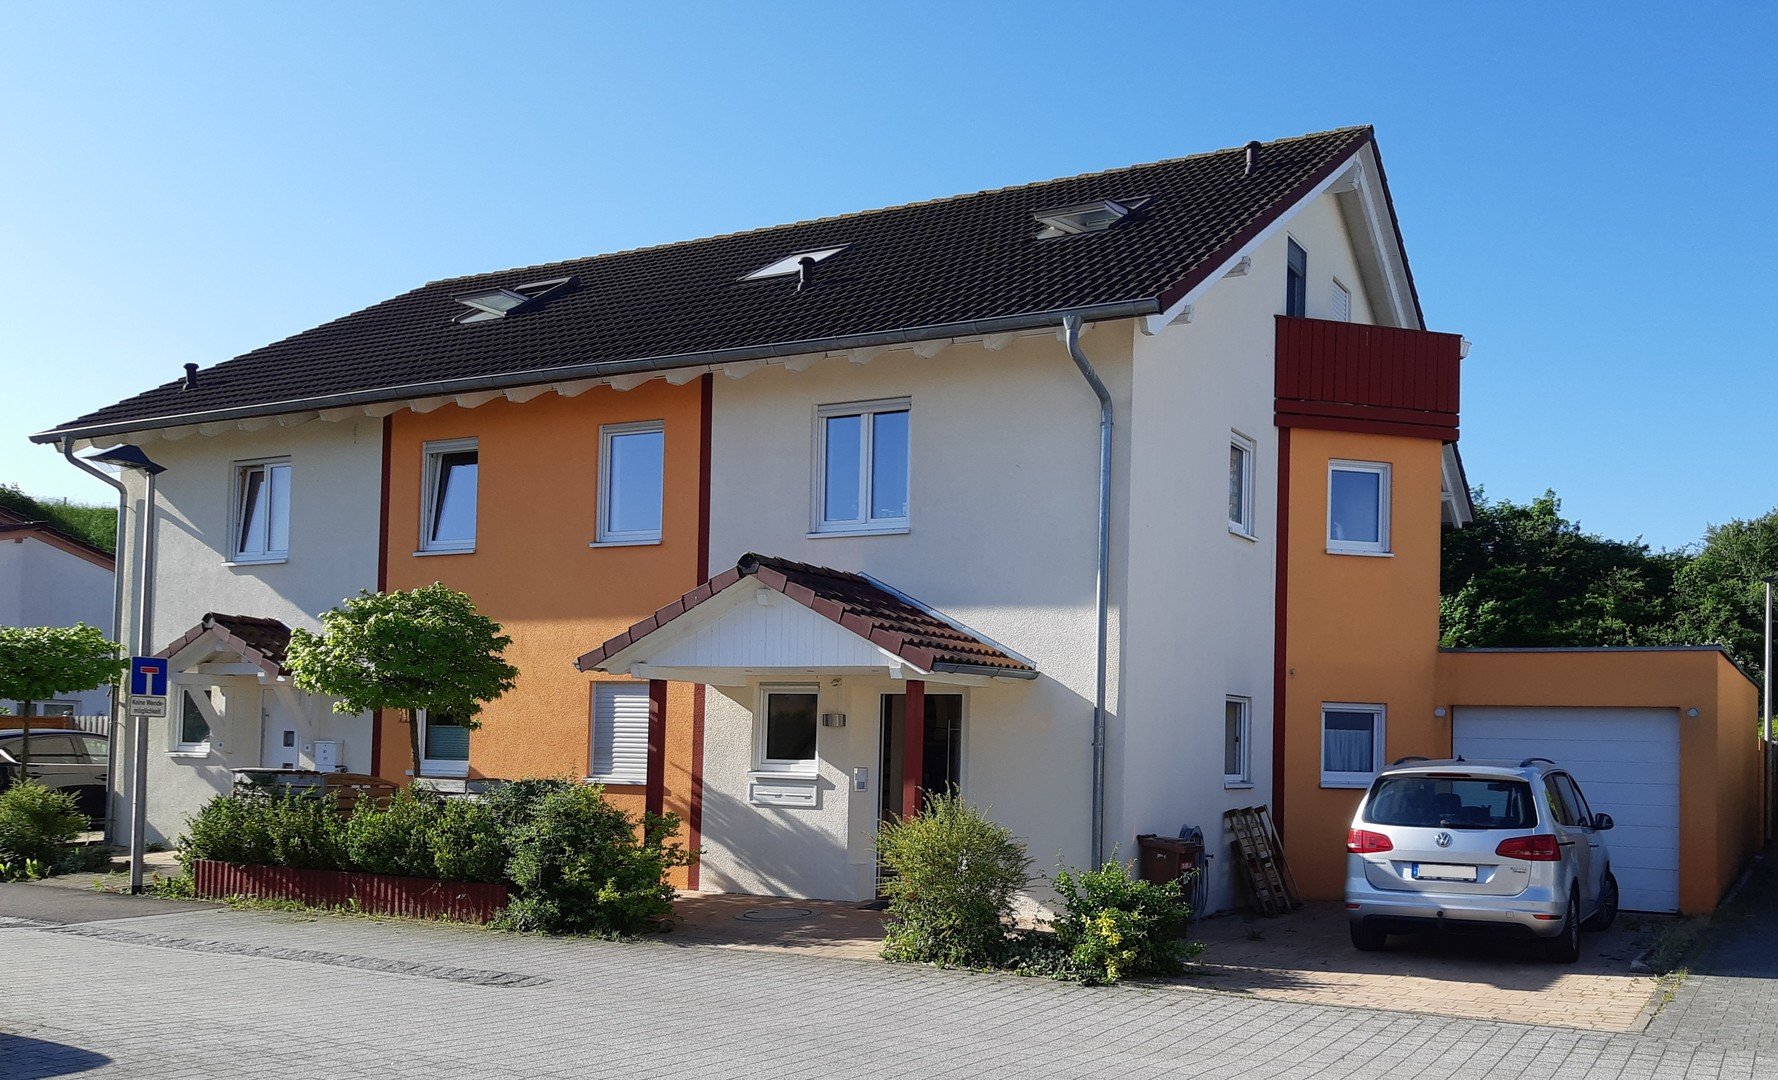 7-Zi-Wohnung in Mehrfamilienhaus mit großem Garten in bester Lage in Crailsheim